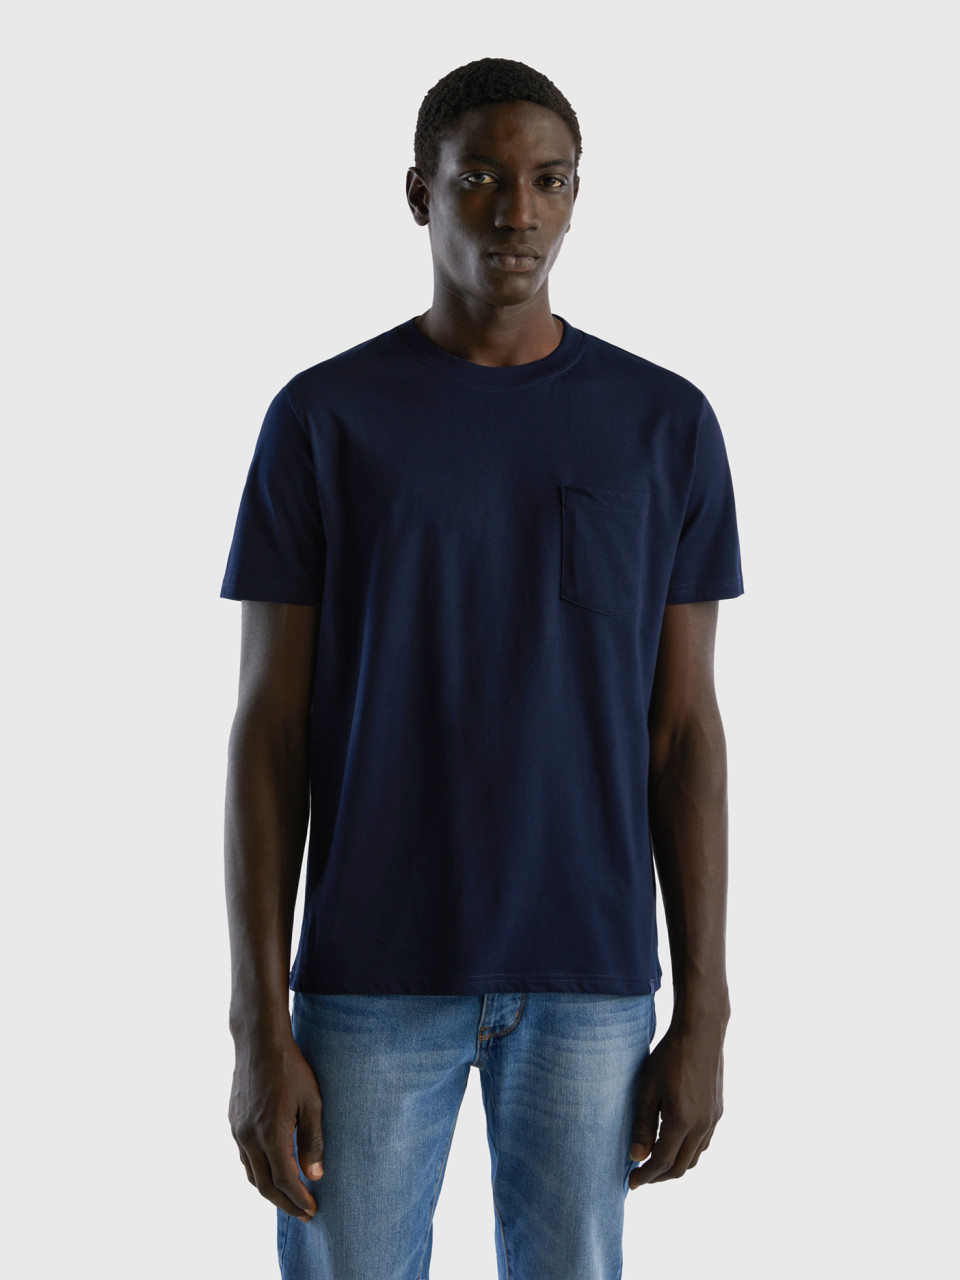 Benetton, T-shirt 100% Cotone Con Taschino, Blu Scuro, Uomo